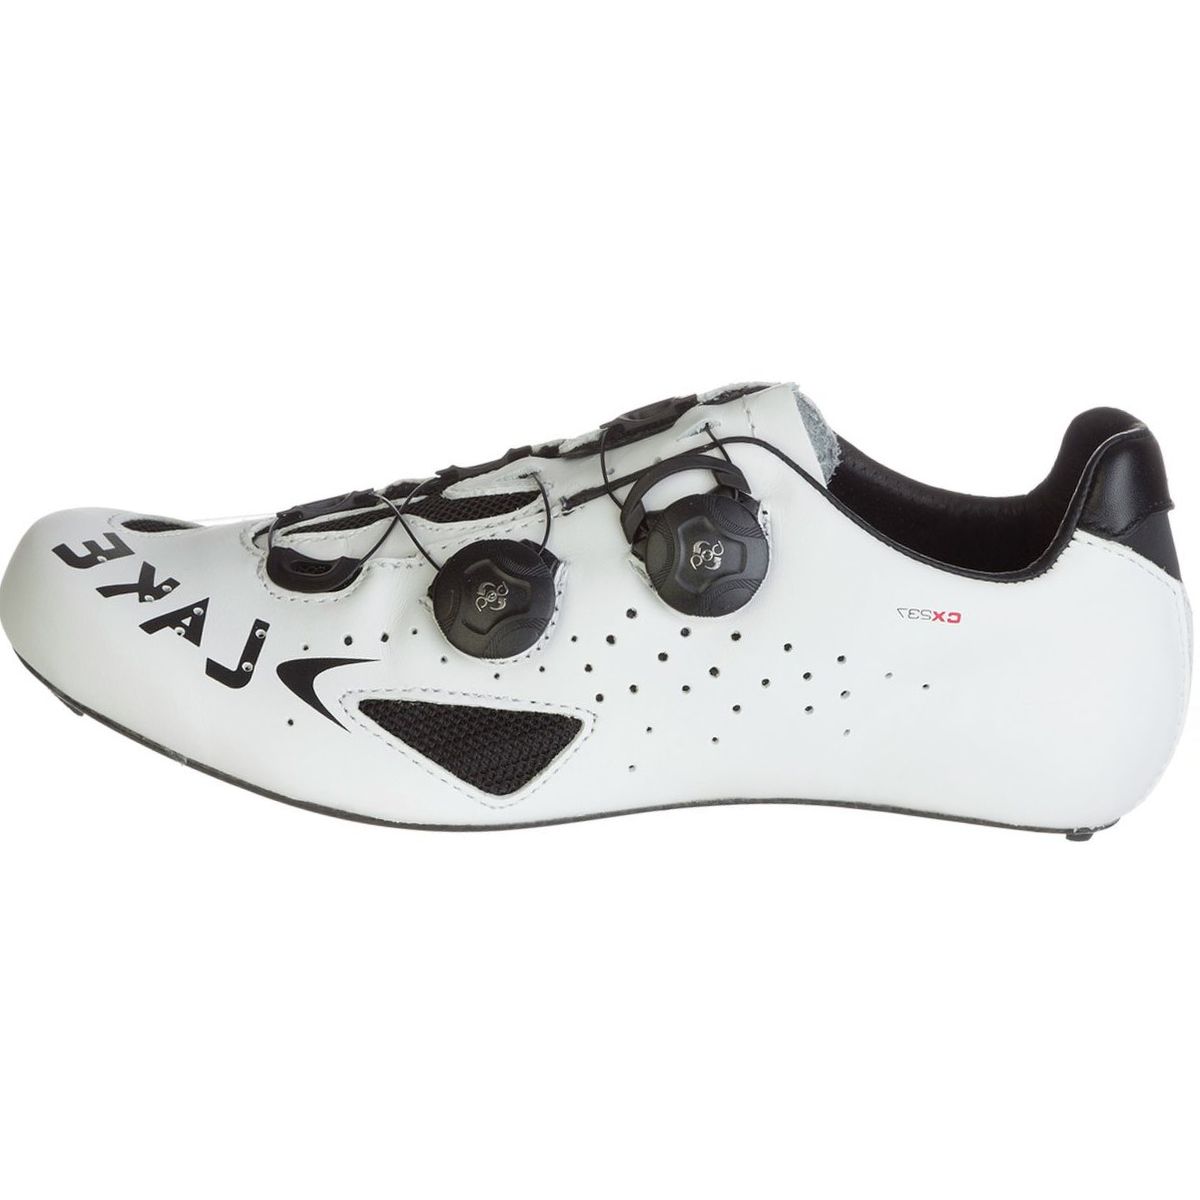 Lake CX237 Cycling Shoe - Men's